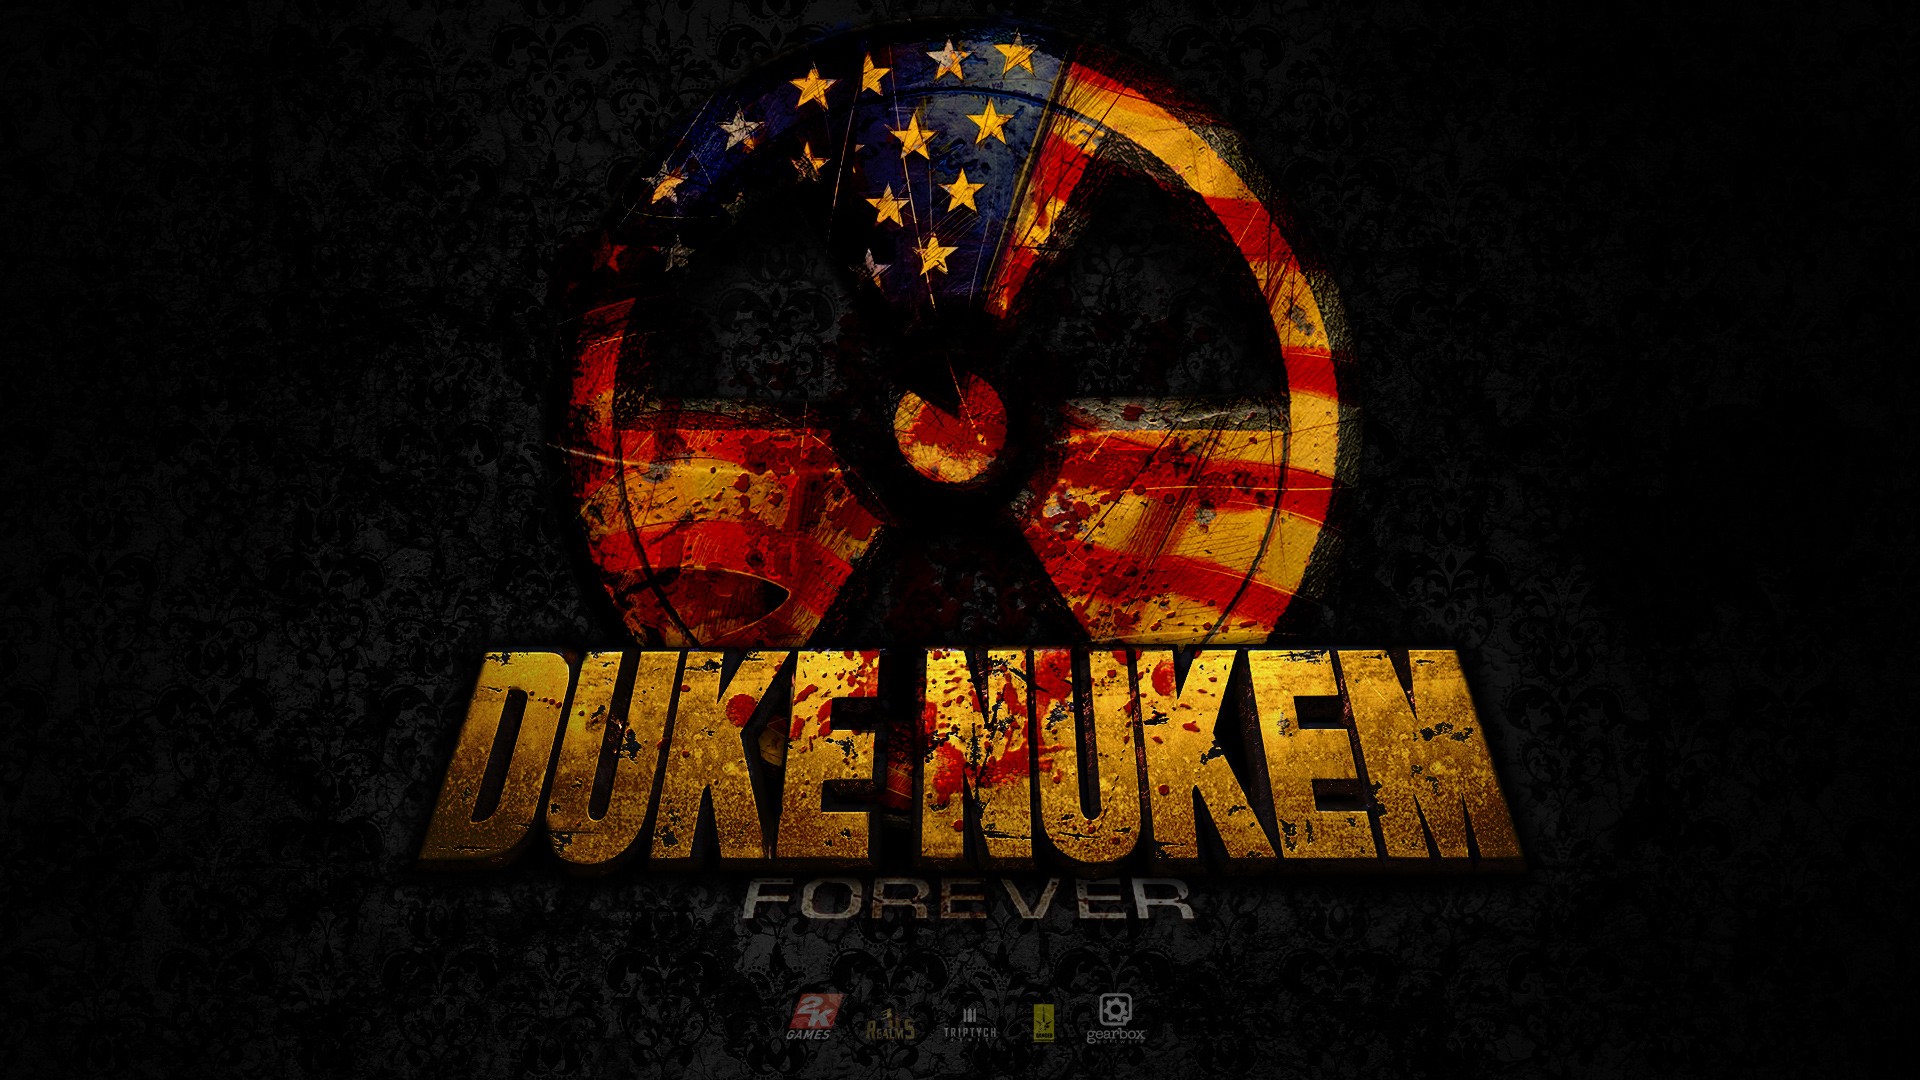 Duke Nukem Forever HD Image Games